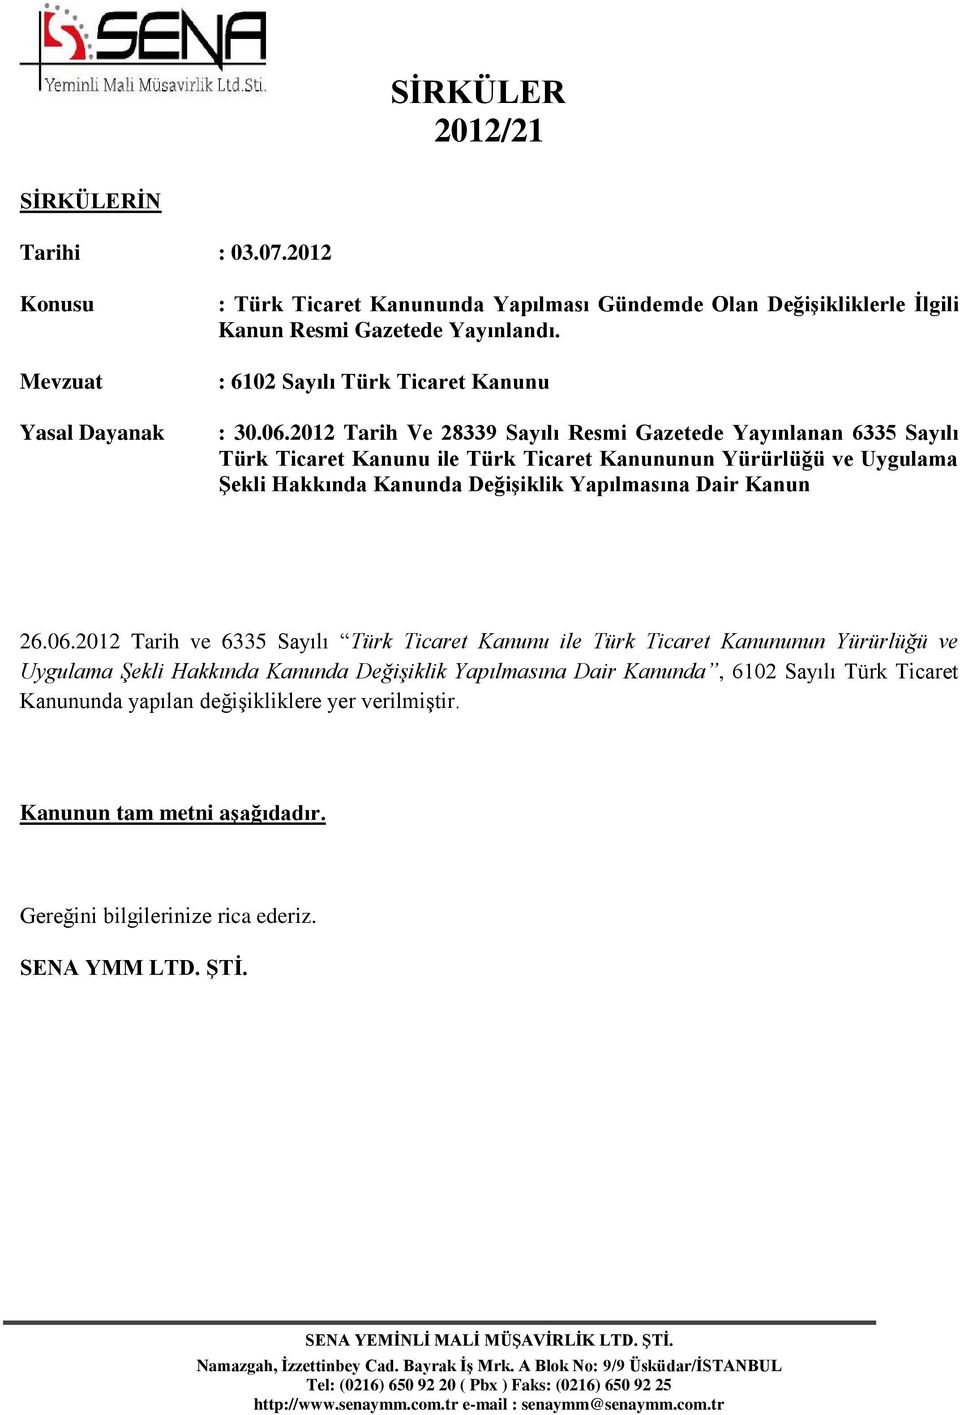 2012 Tarih Ve 28339 Sayılı Resmi Gazetede Yayınlanan 6335 Sayılı Türk Ticaret Kanunu ile Türk Ticaret Kanununun Yürürlüğü ve Uygulama Şekli Hakkında Kanunda Değişiklik Yapılmasına